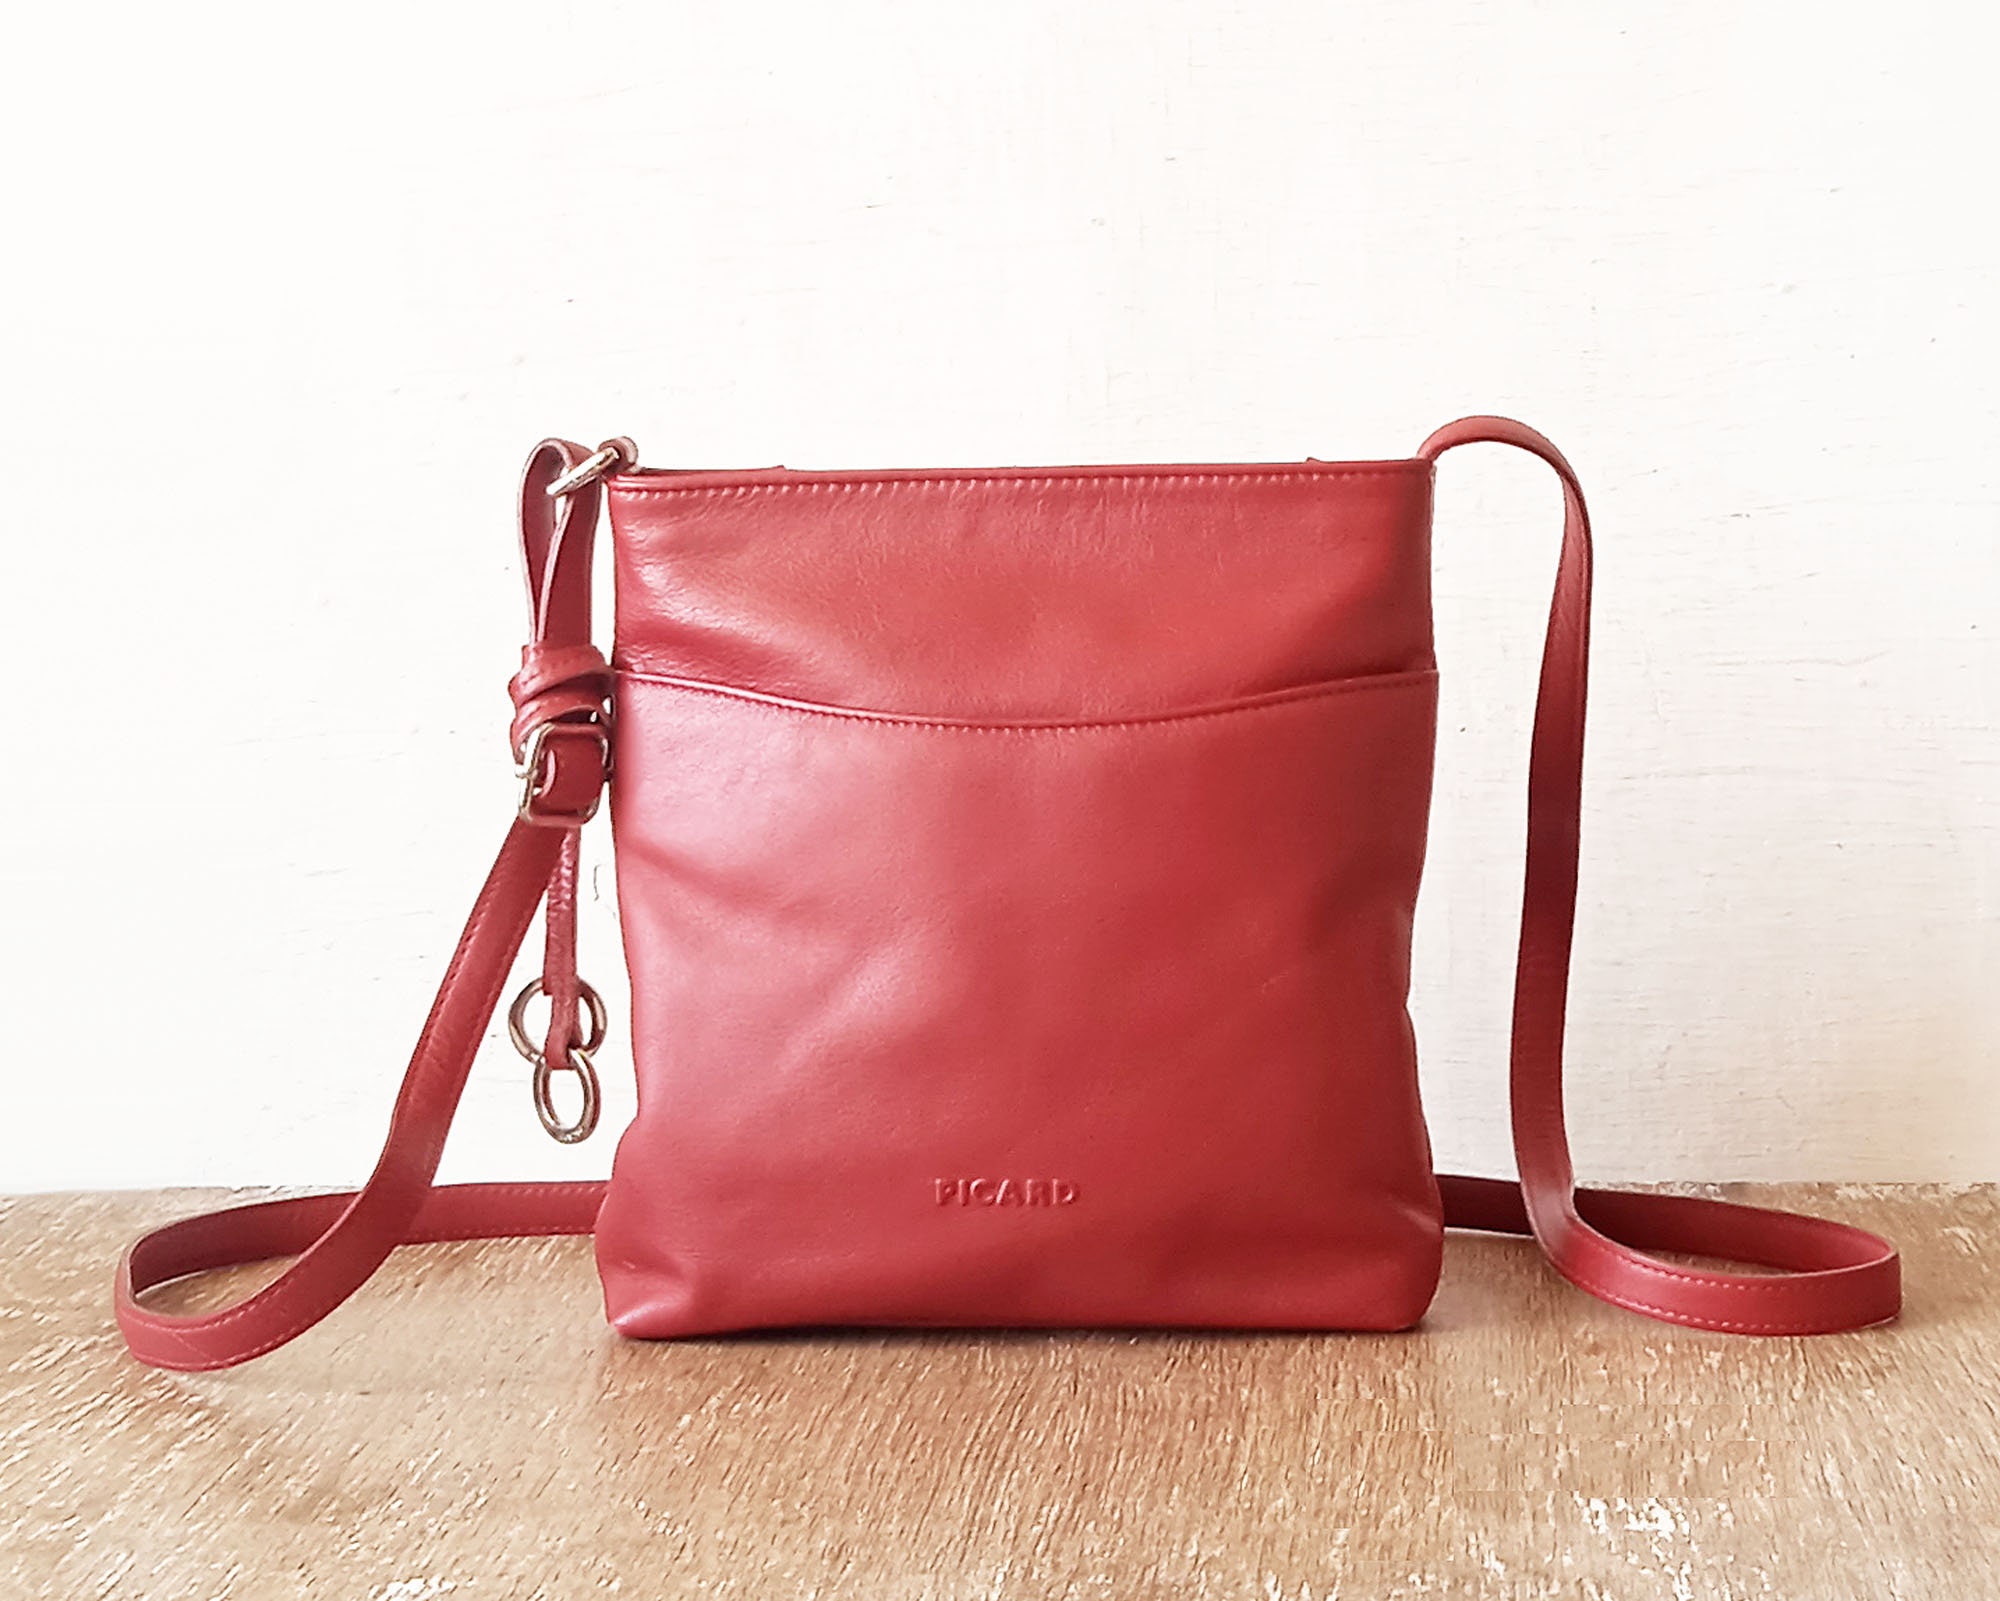 Vintage Red Leather Woman Shoulder Bag Picard Leather Bag 